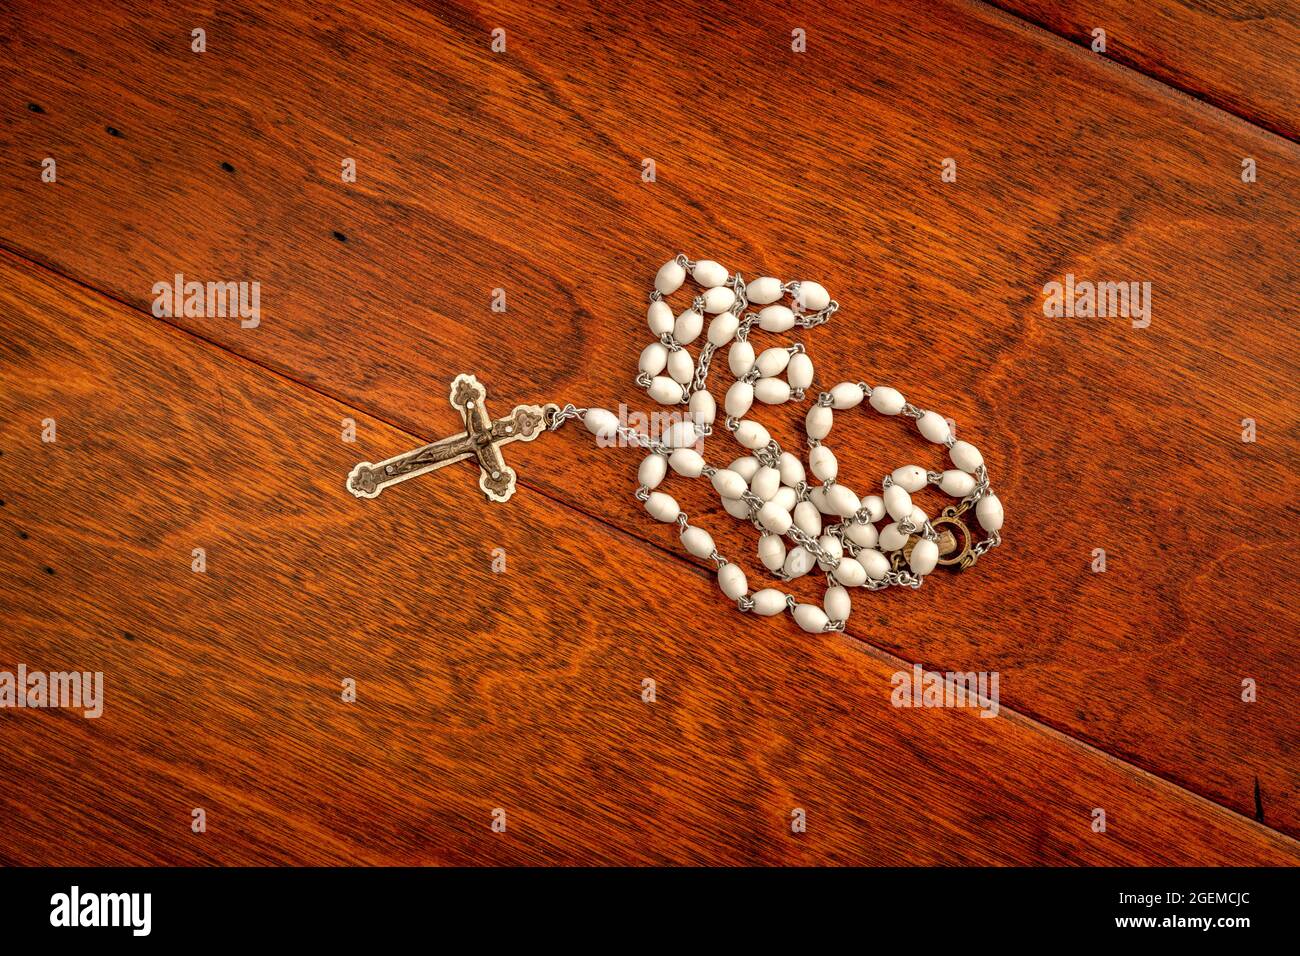 Un beau crucifix (corpus) et des perles sur une riche surface de podium en chêne avant un sermon. Banque D'Images